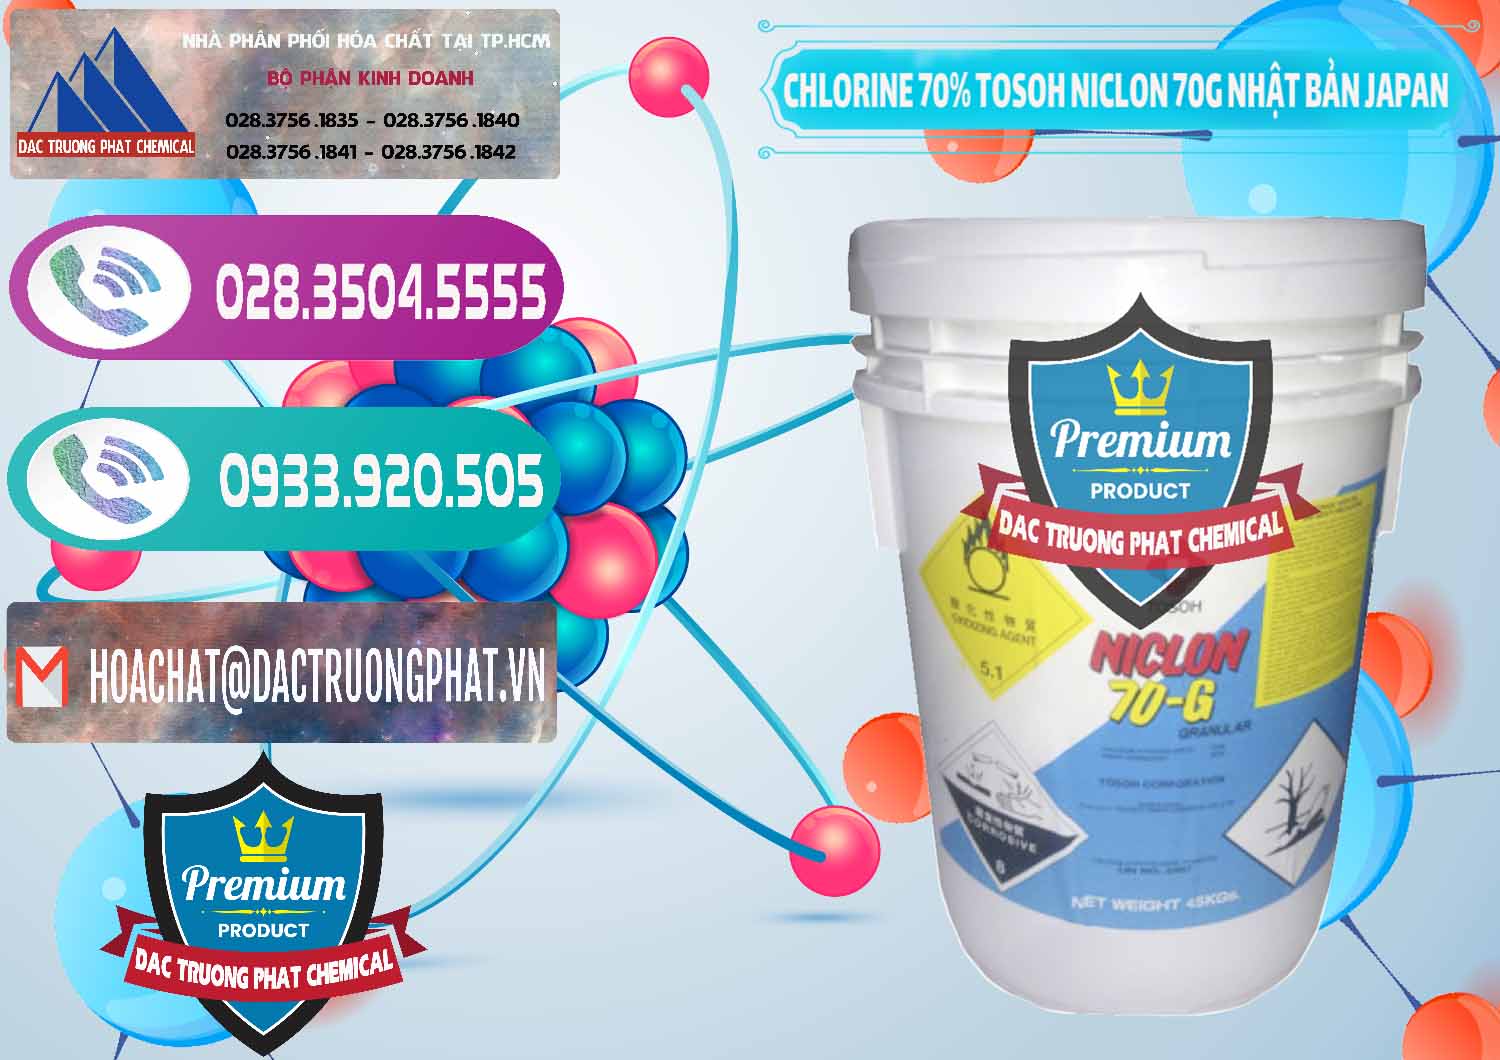 Chuyên bán ( phân phối ) Clorin – Chlorine 70% Tosoh Niclon 70G Nhật Bản Japan - 0242 - Cty chuyên bán & phân phối hóa chất tại TP.HCM - hoachatxulynuoc.com